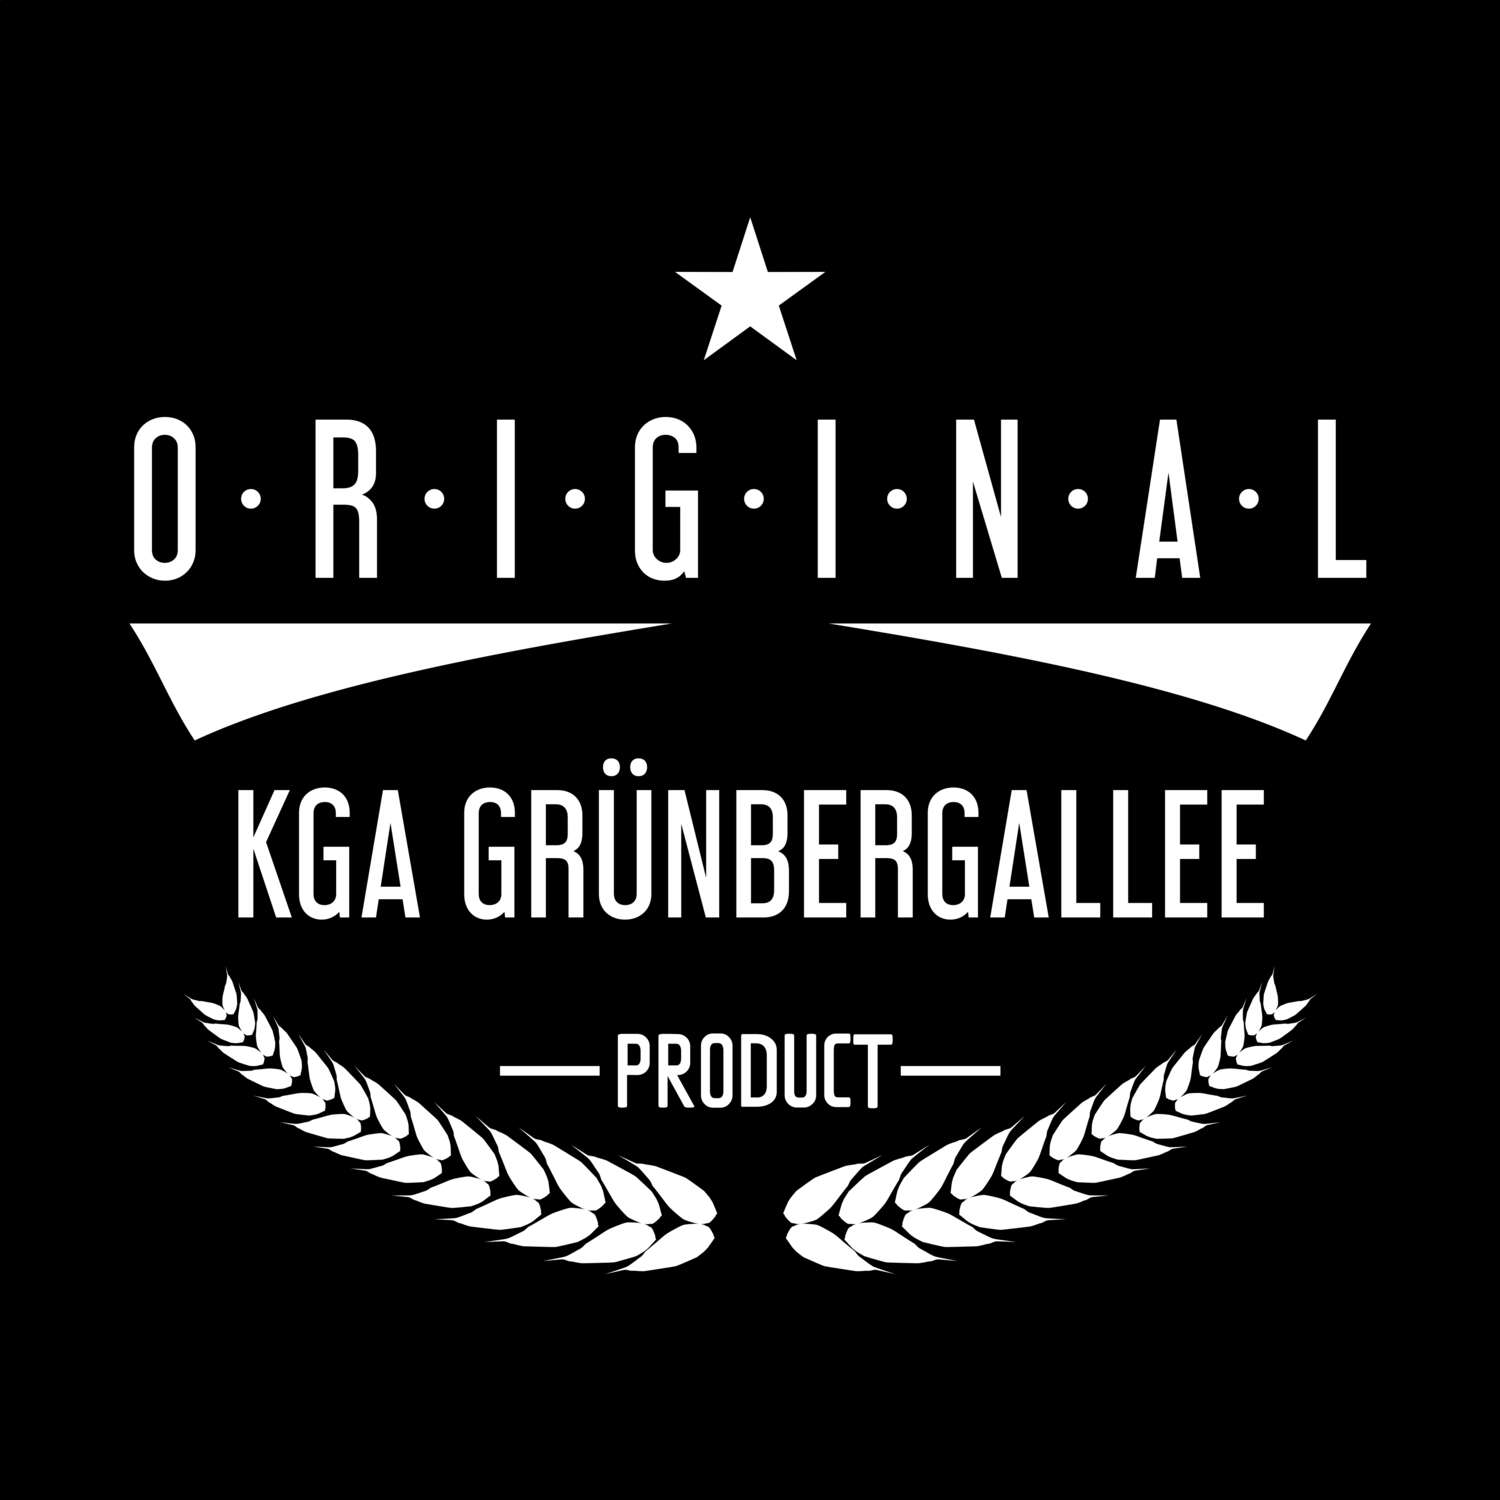 KGA Grünbergallee T-Shirt »Original Product«